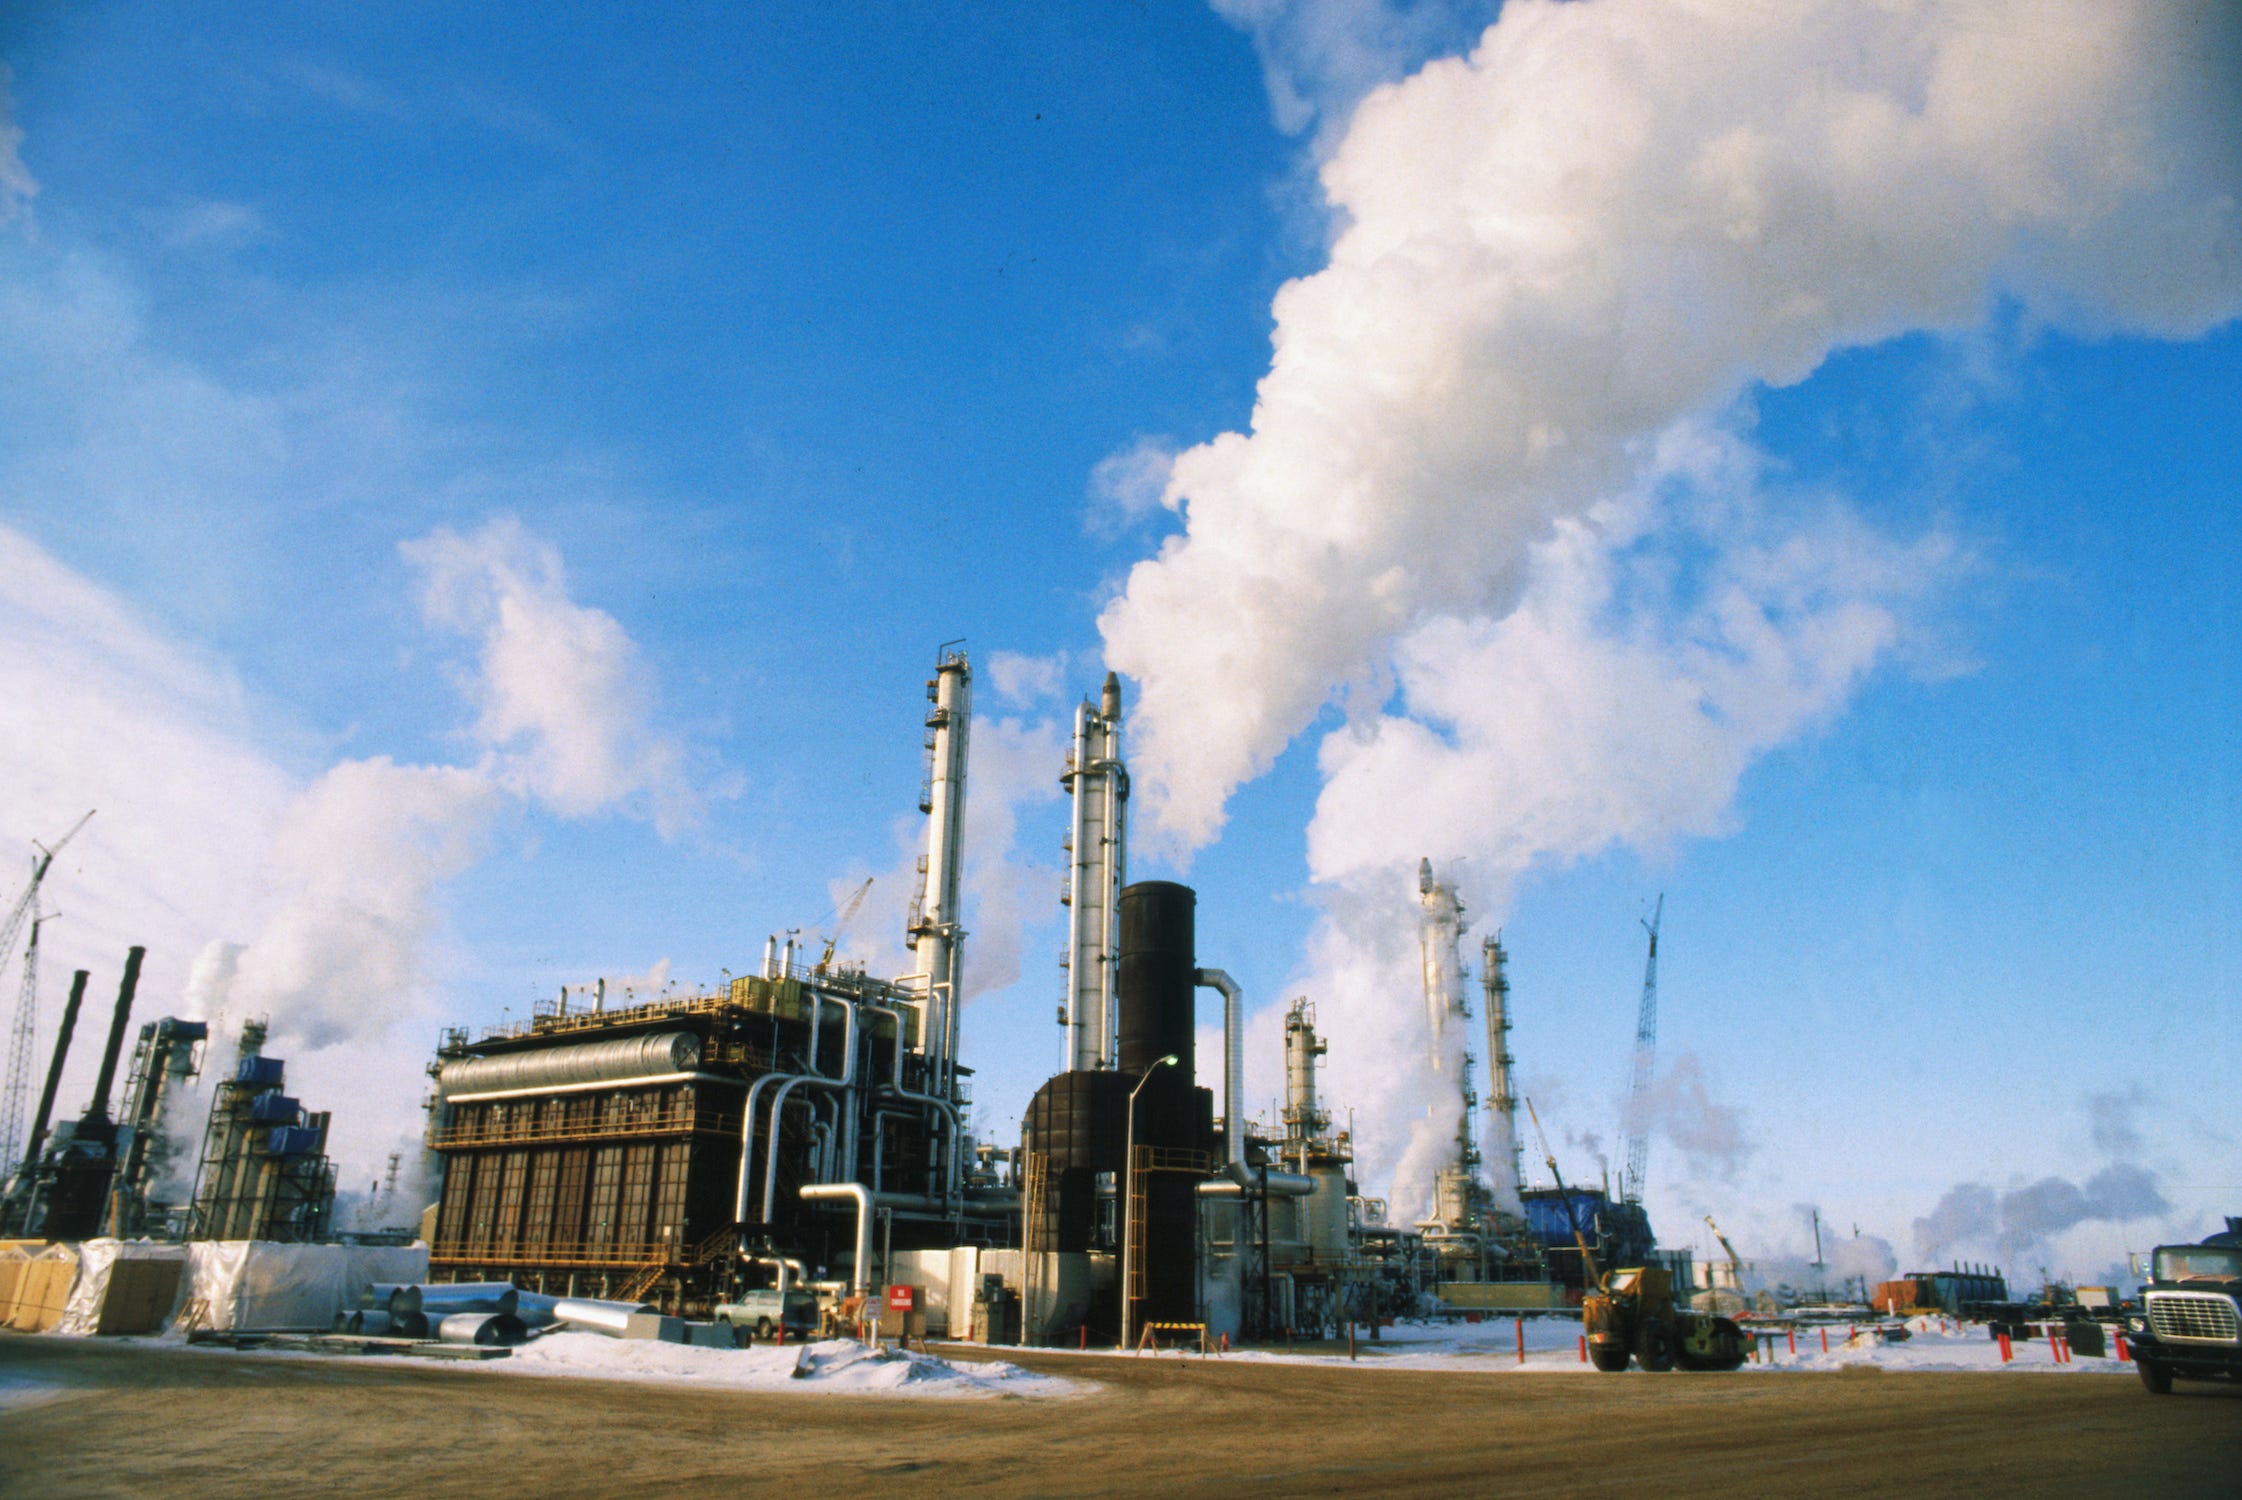 Wasserstoffkraftwerk mit hohen Schornsteinen, die Dampfwolken in einen blauen Himmel ausstoßen